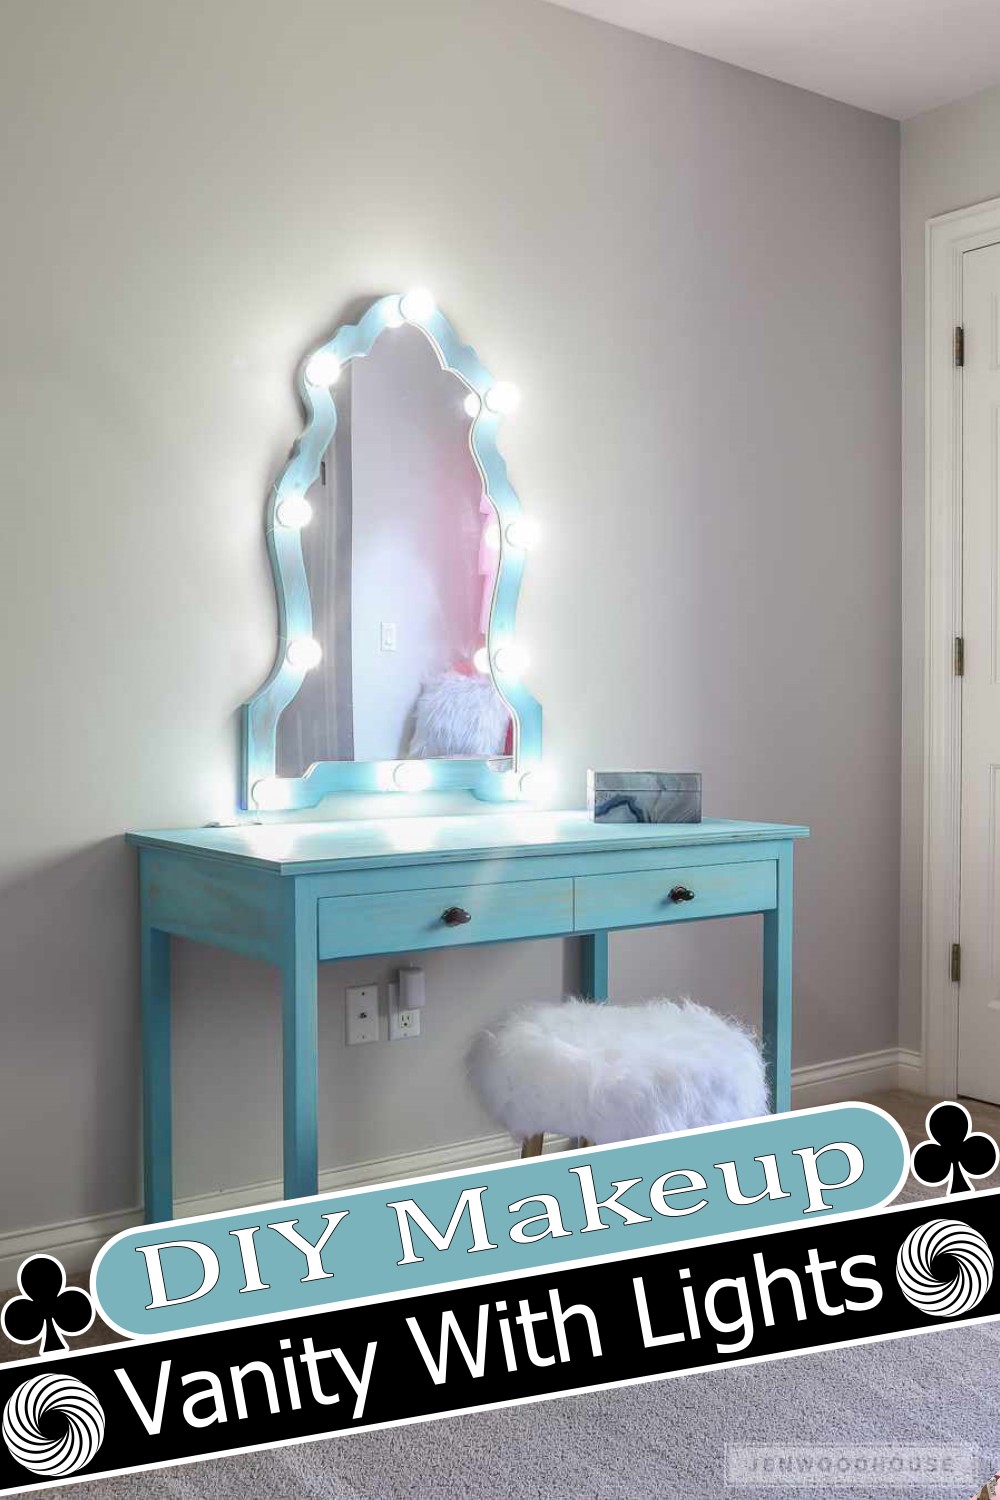 DIY Makeup Vanity With Lights